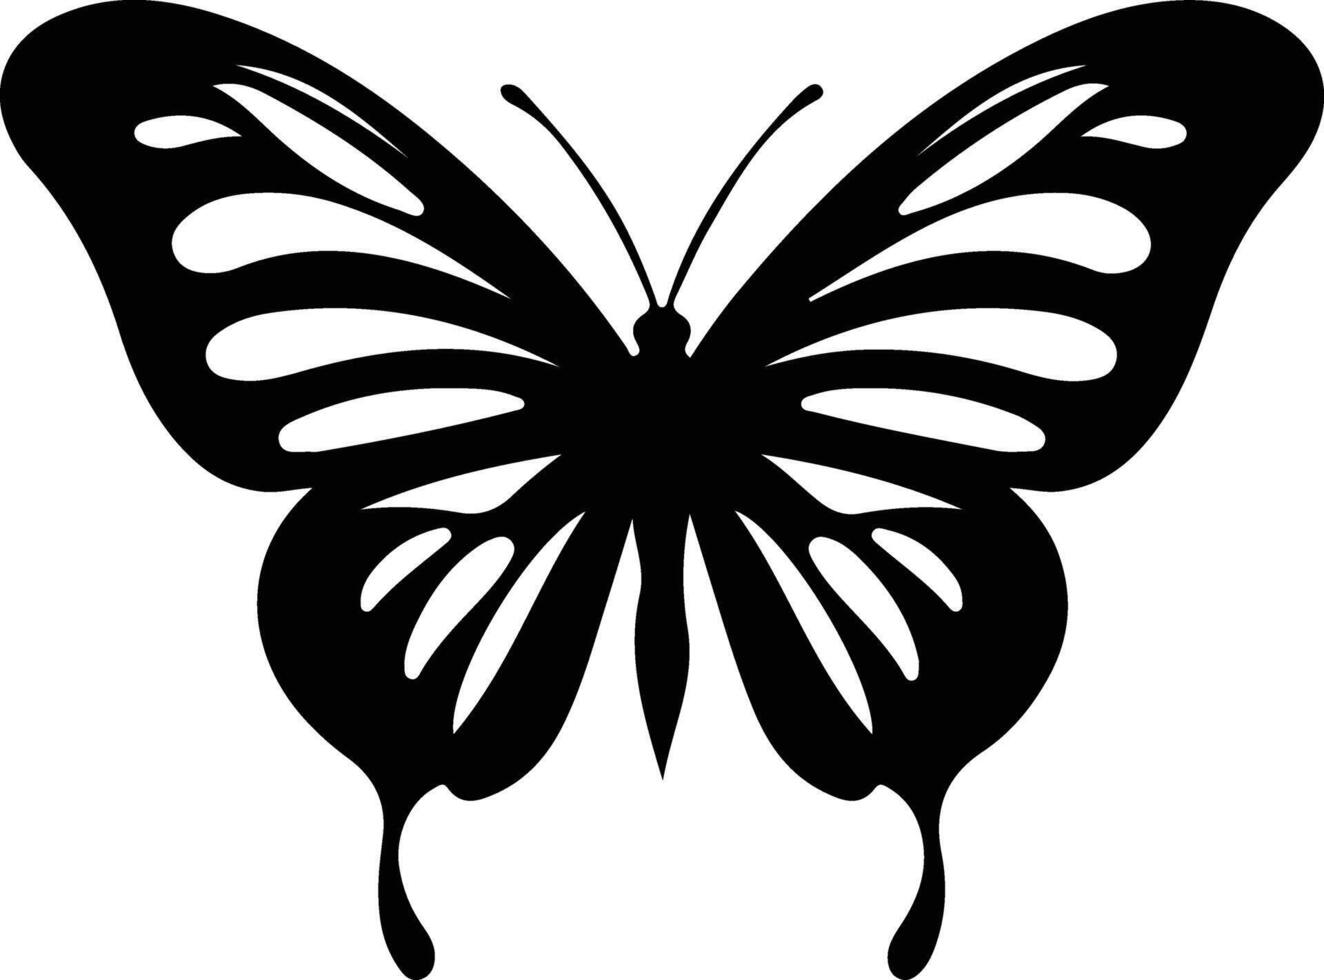 Zebra Longwing Schmetterling schwarz Silhouette vektor